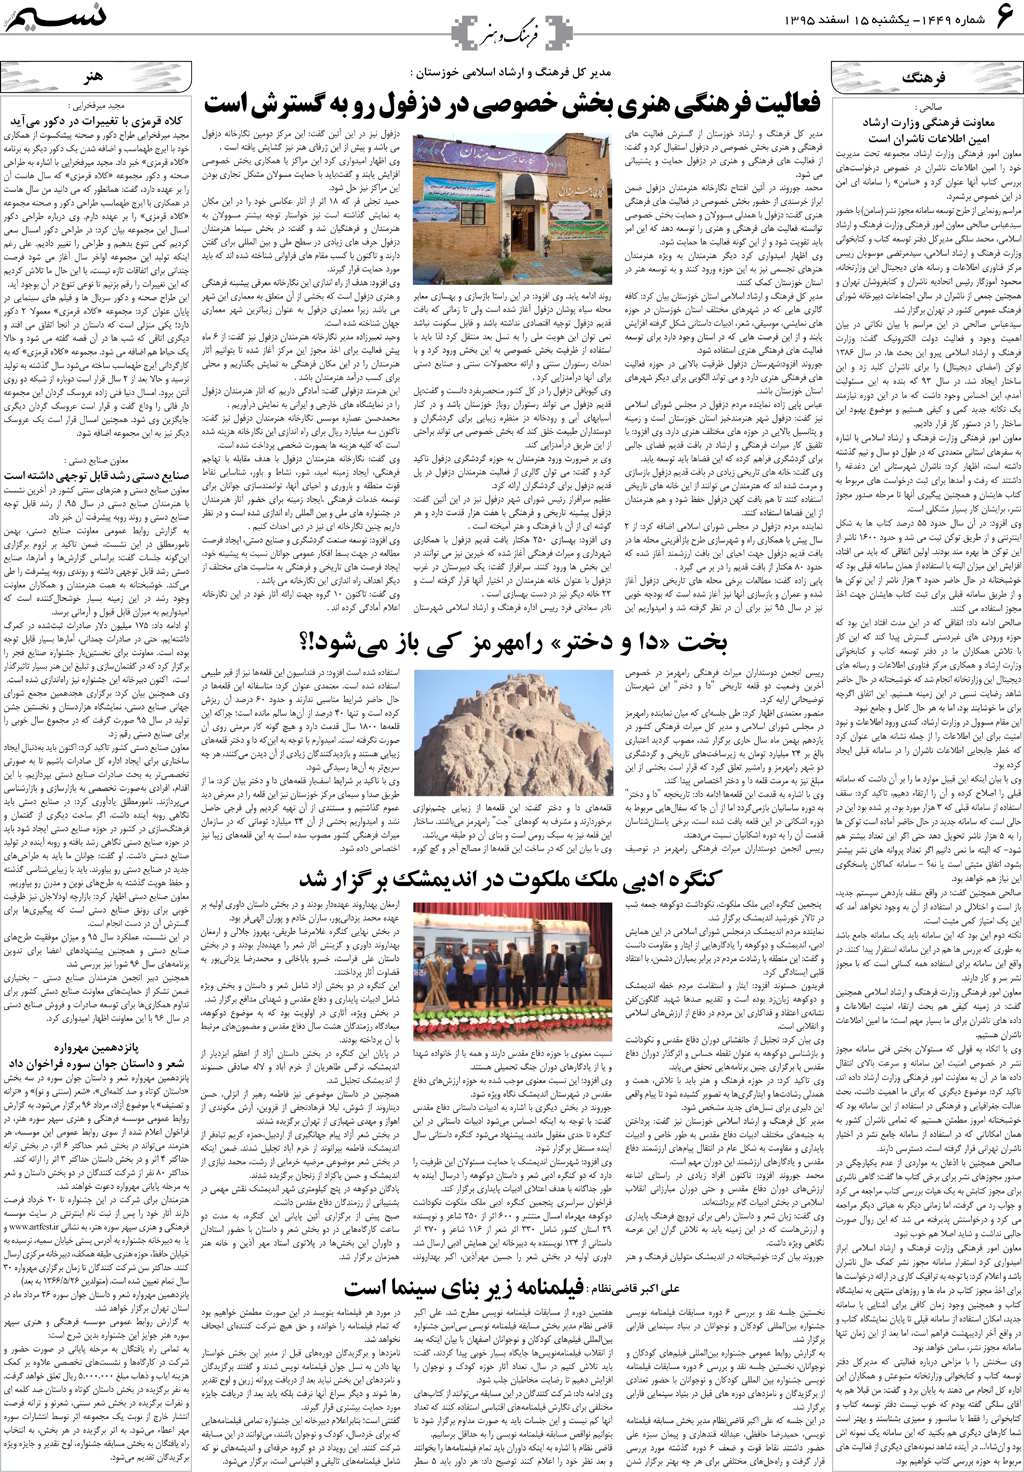 صفحه فرهنگ و هنر روزنامه نسیم شماره 1449